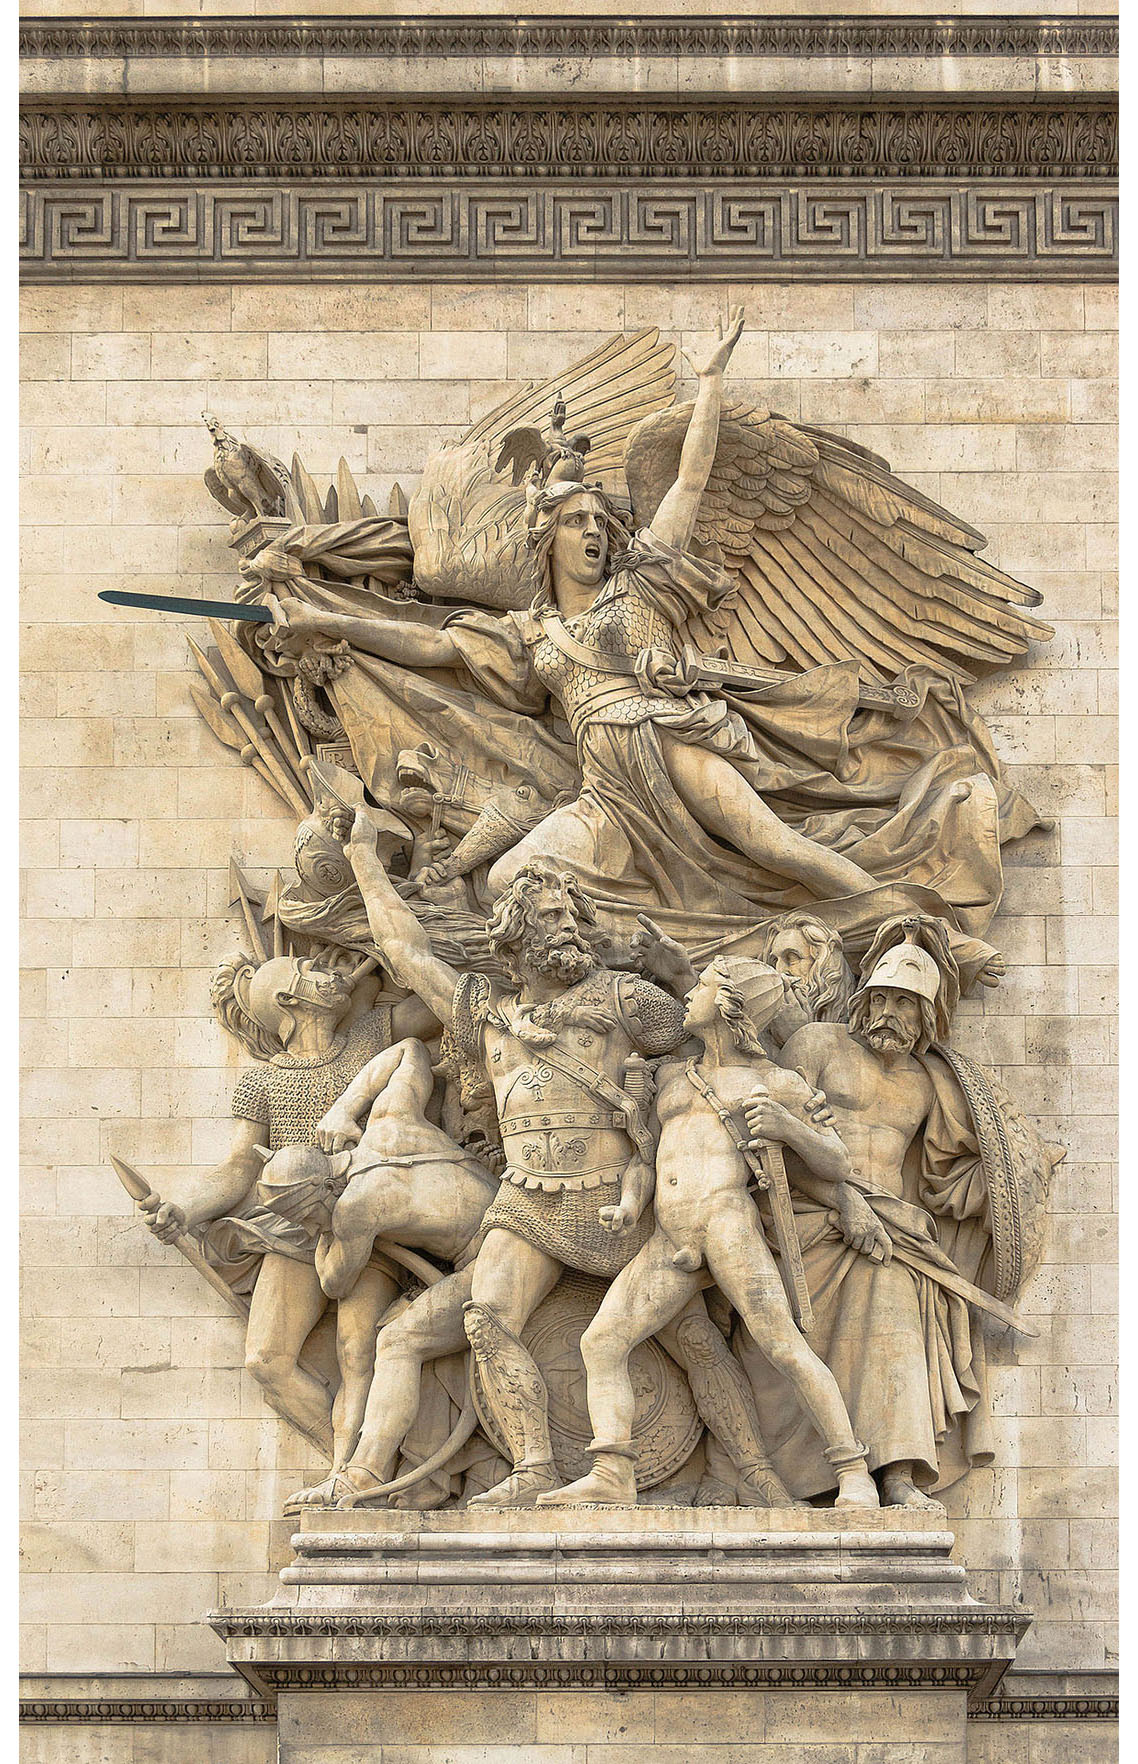 скульптурная группа "Выступление волонтёров" на Триумфальной арке в Париже.